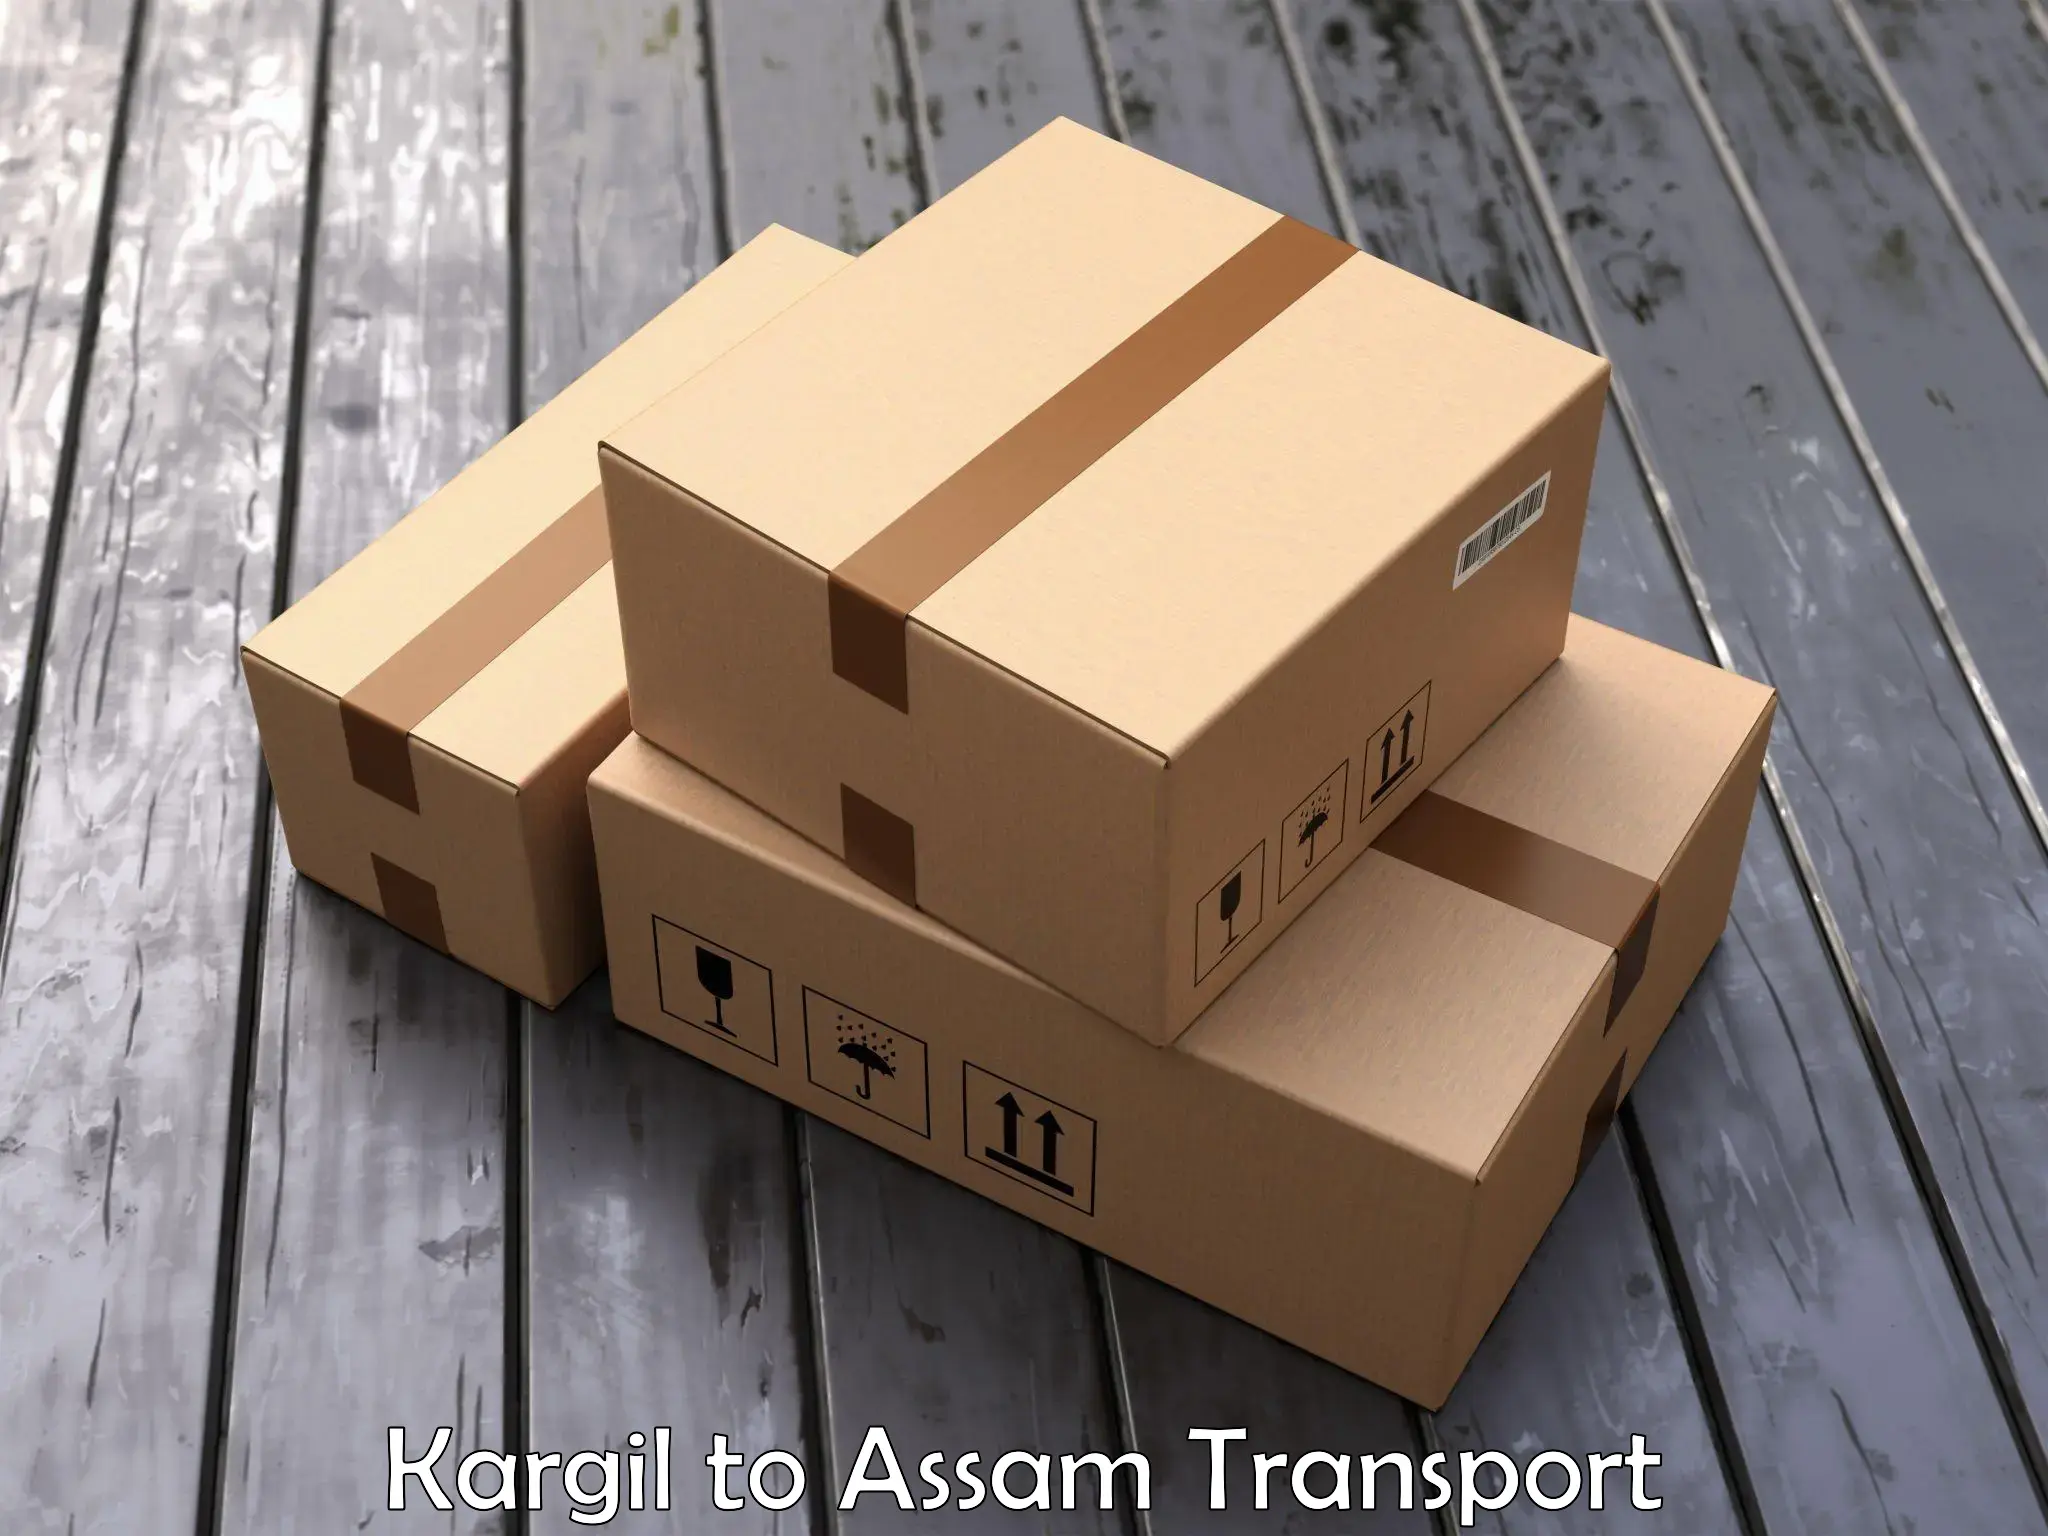 Online transport service Kargil to Assam